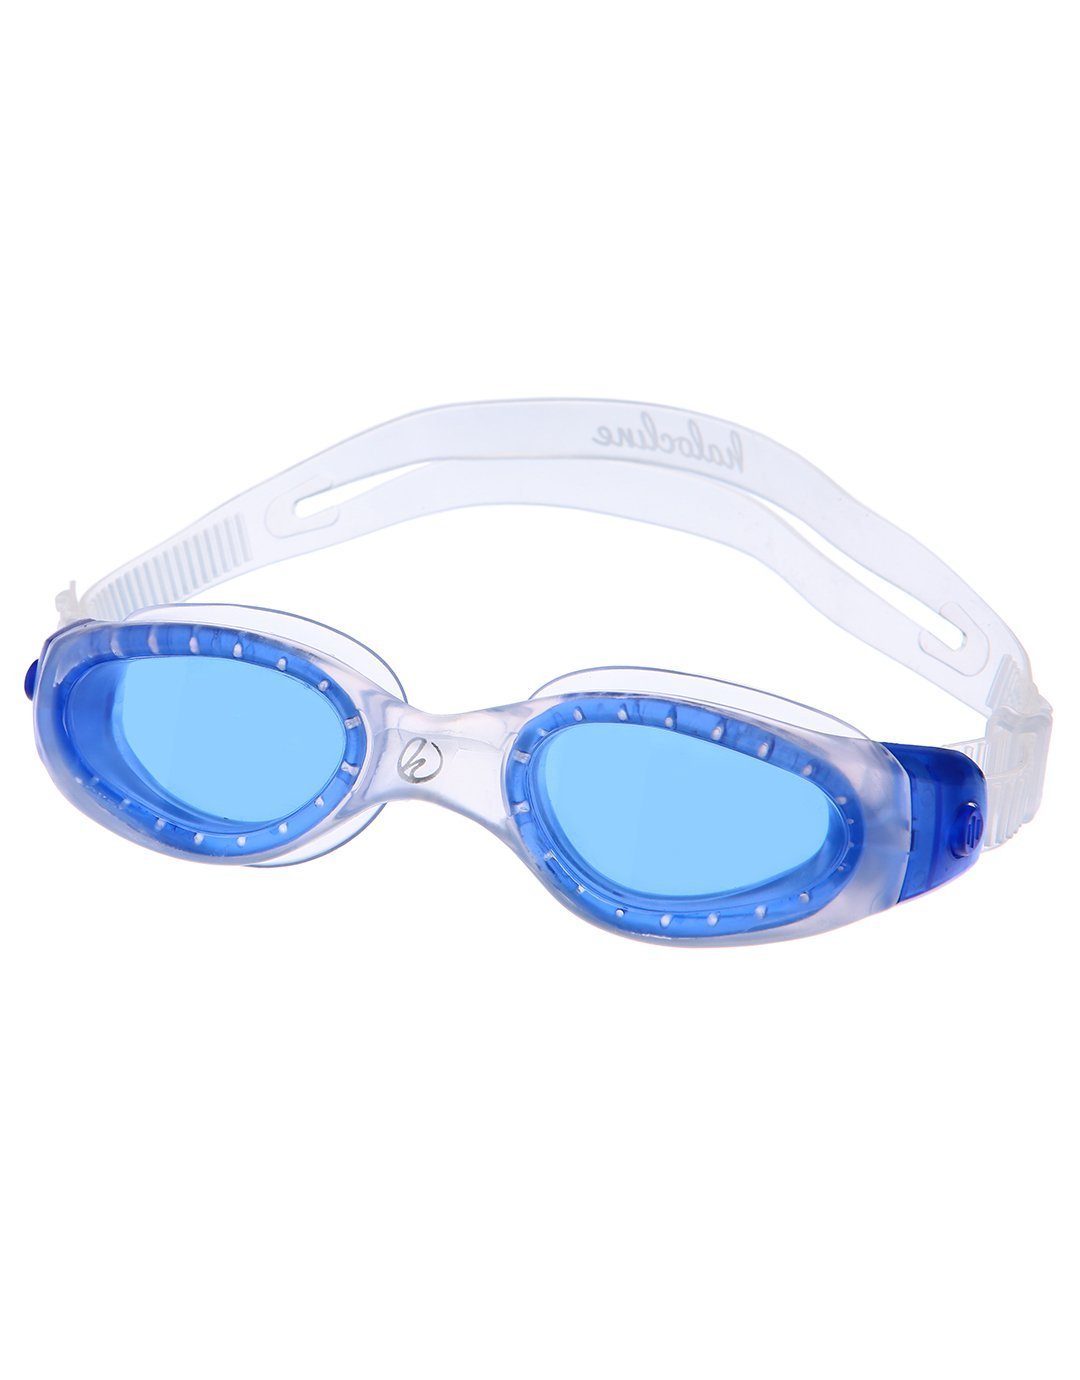 Halocline Comfort Plus Junior Swimming Goggles